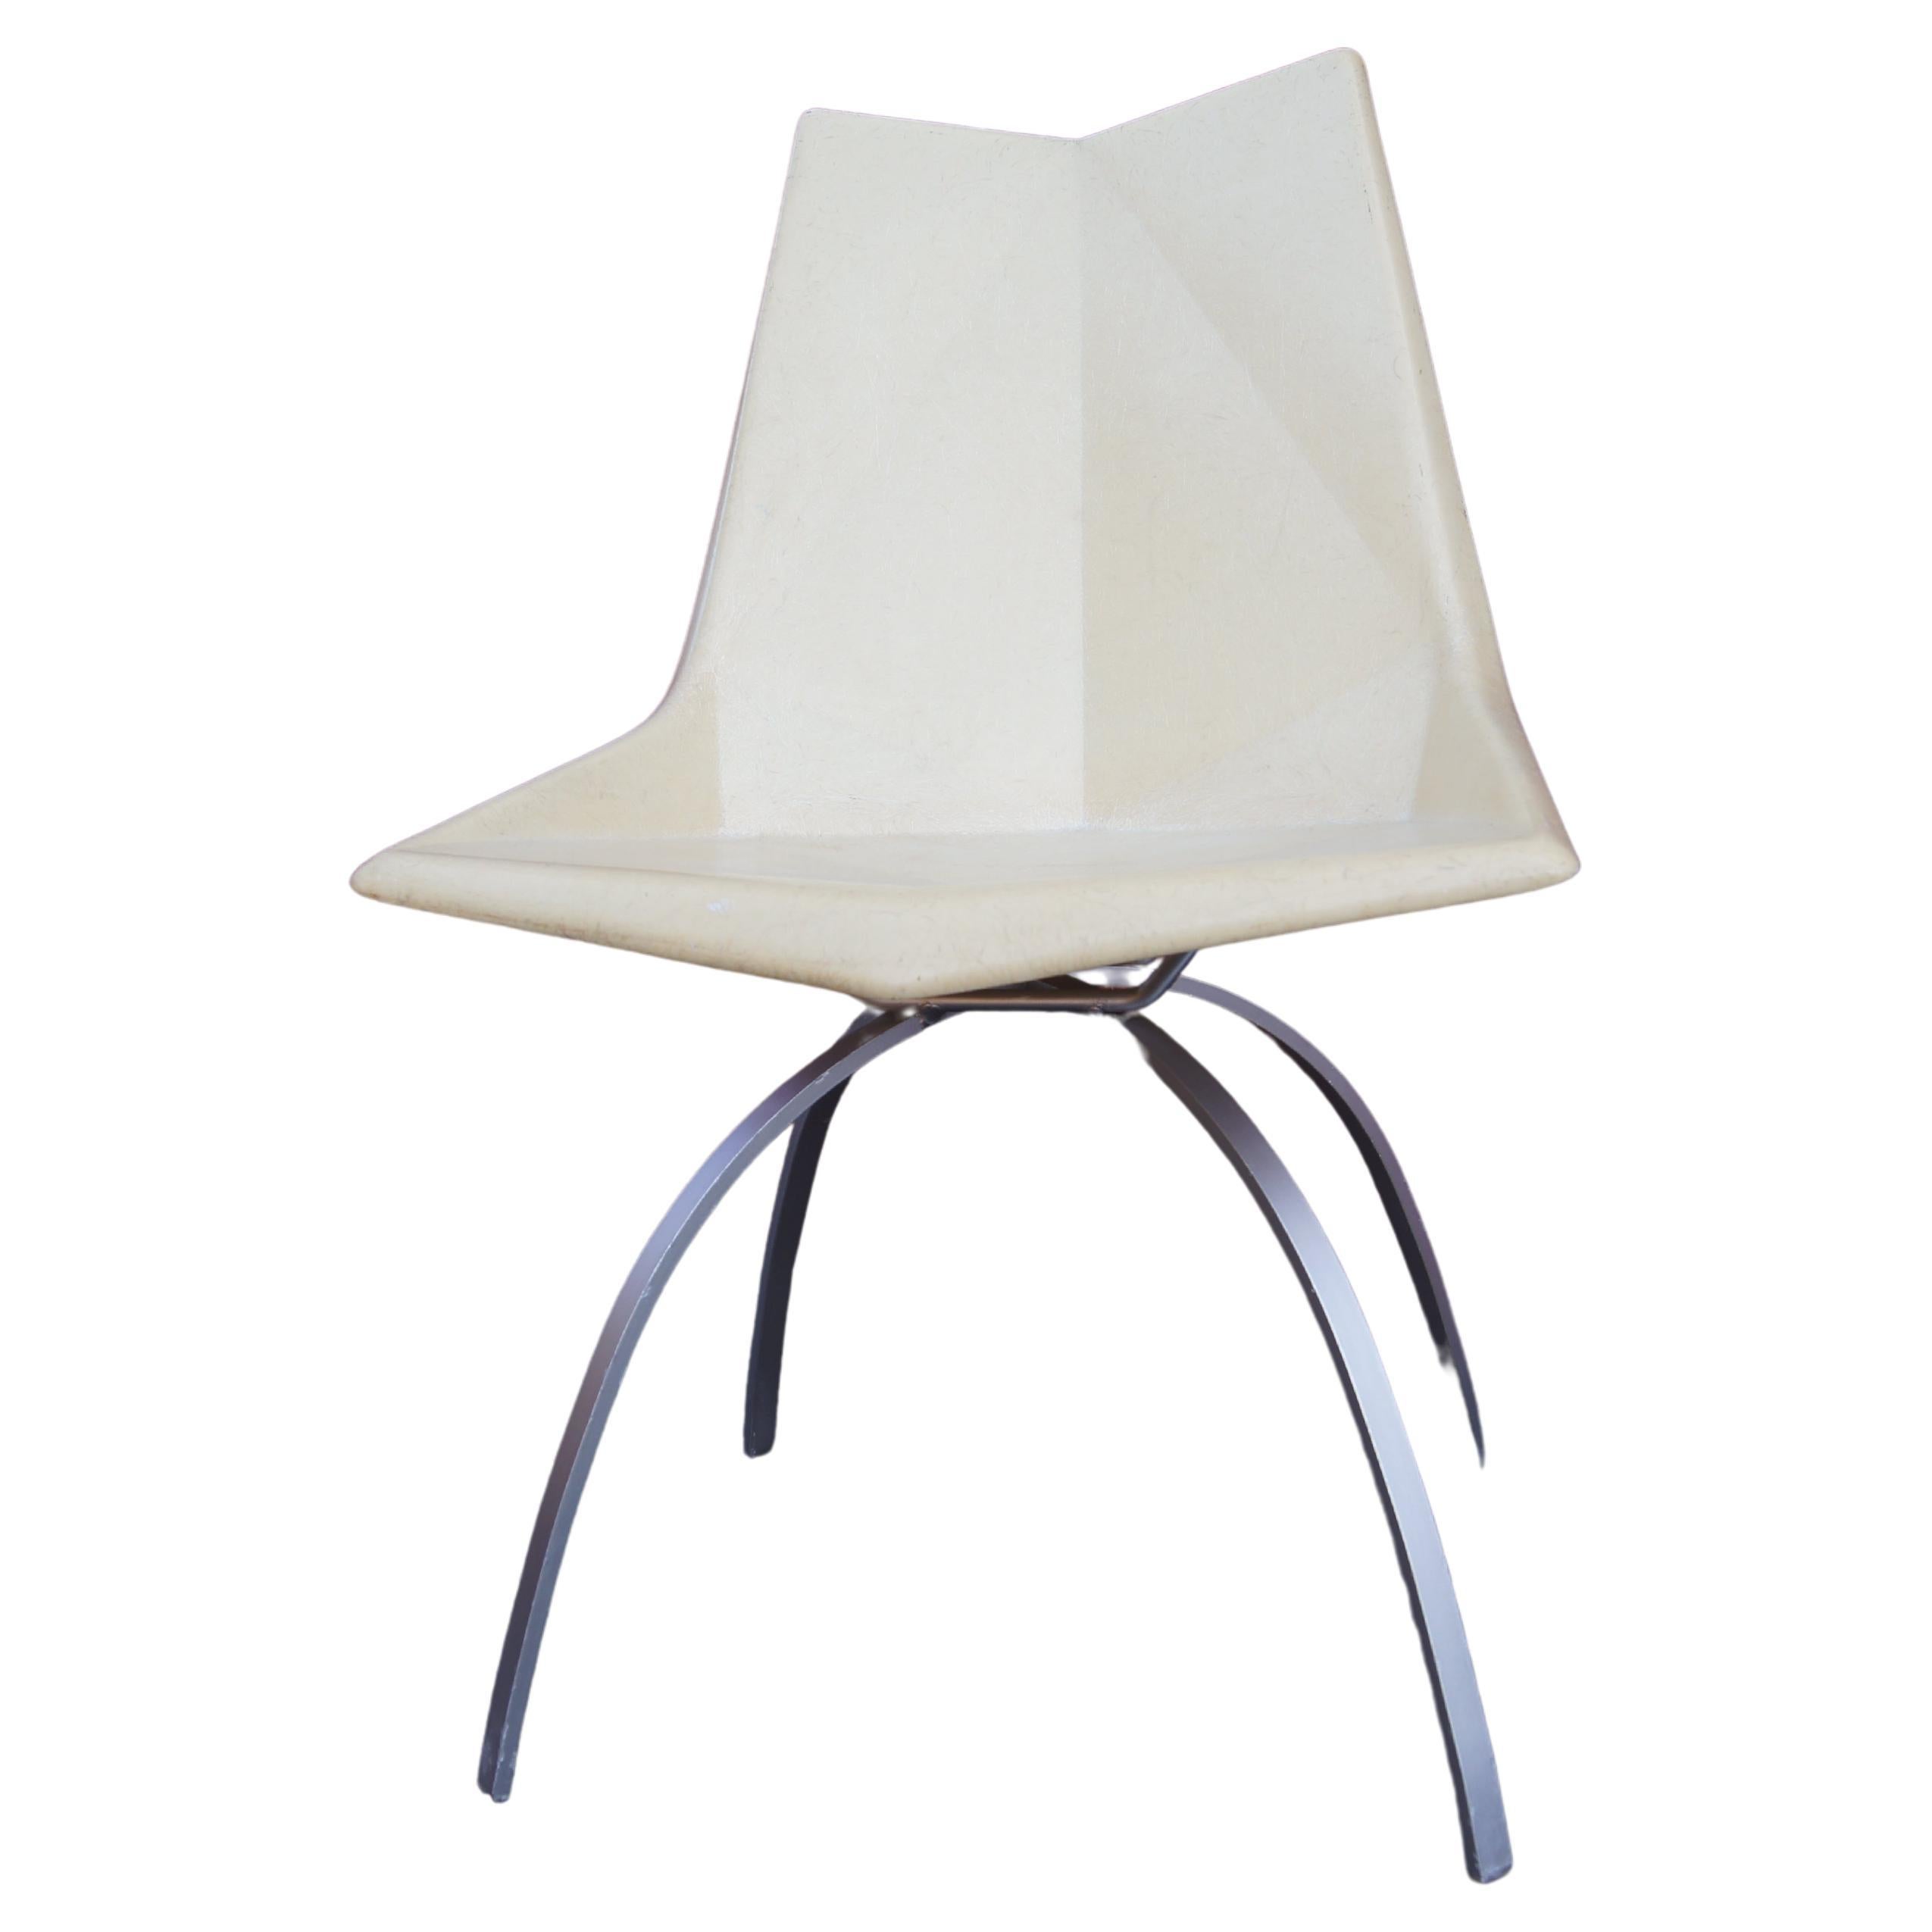 Fiberglass Origami Chair on Spider Base by Paul McCobb for St. John